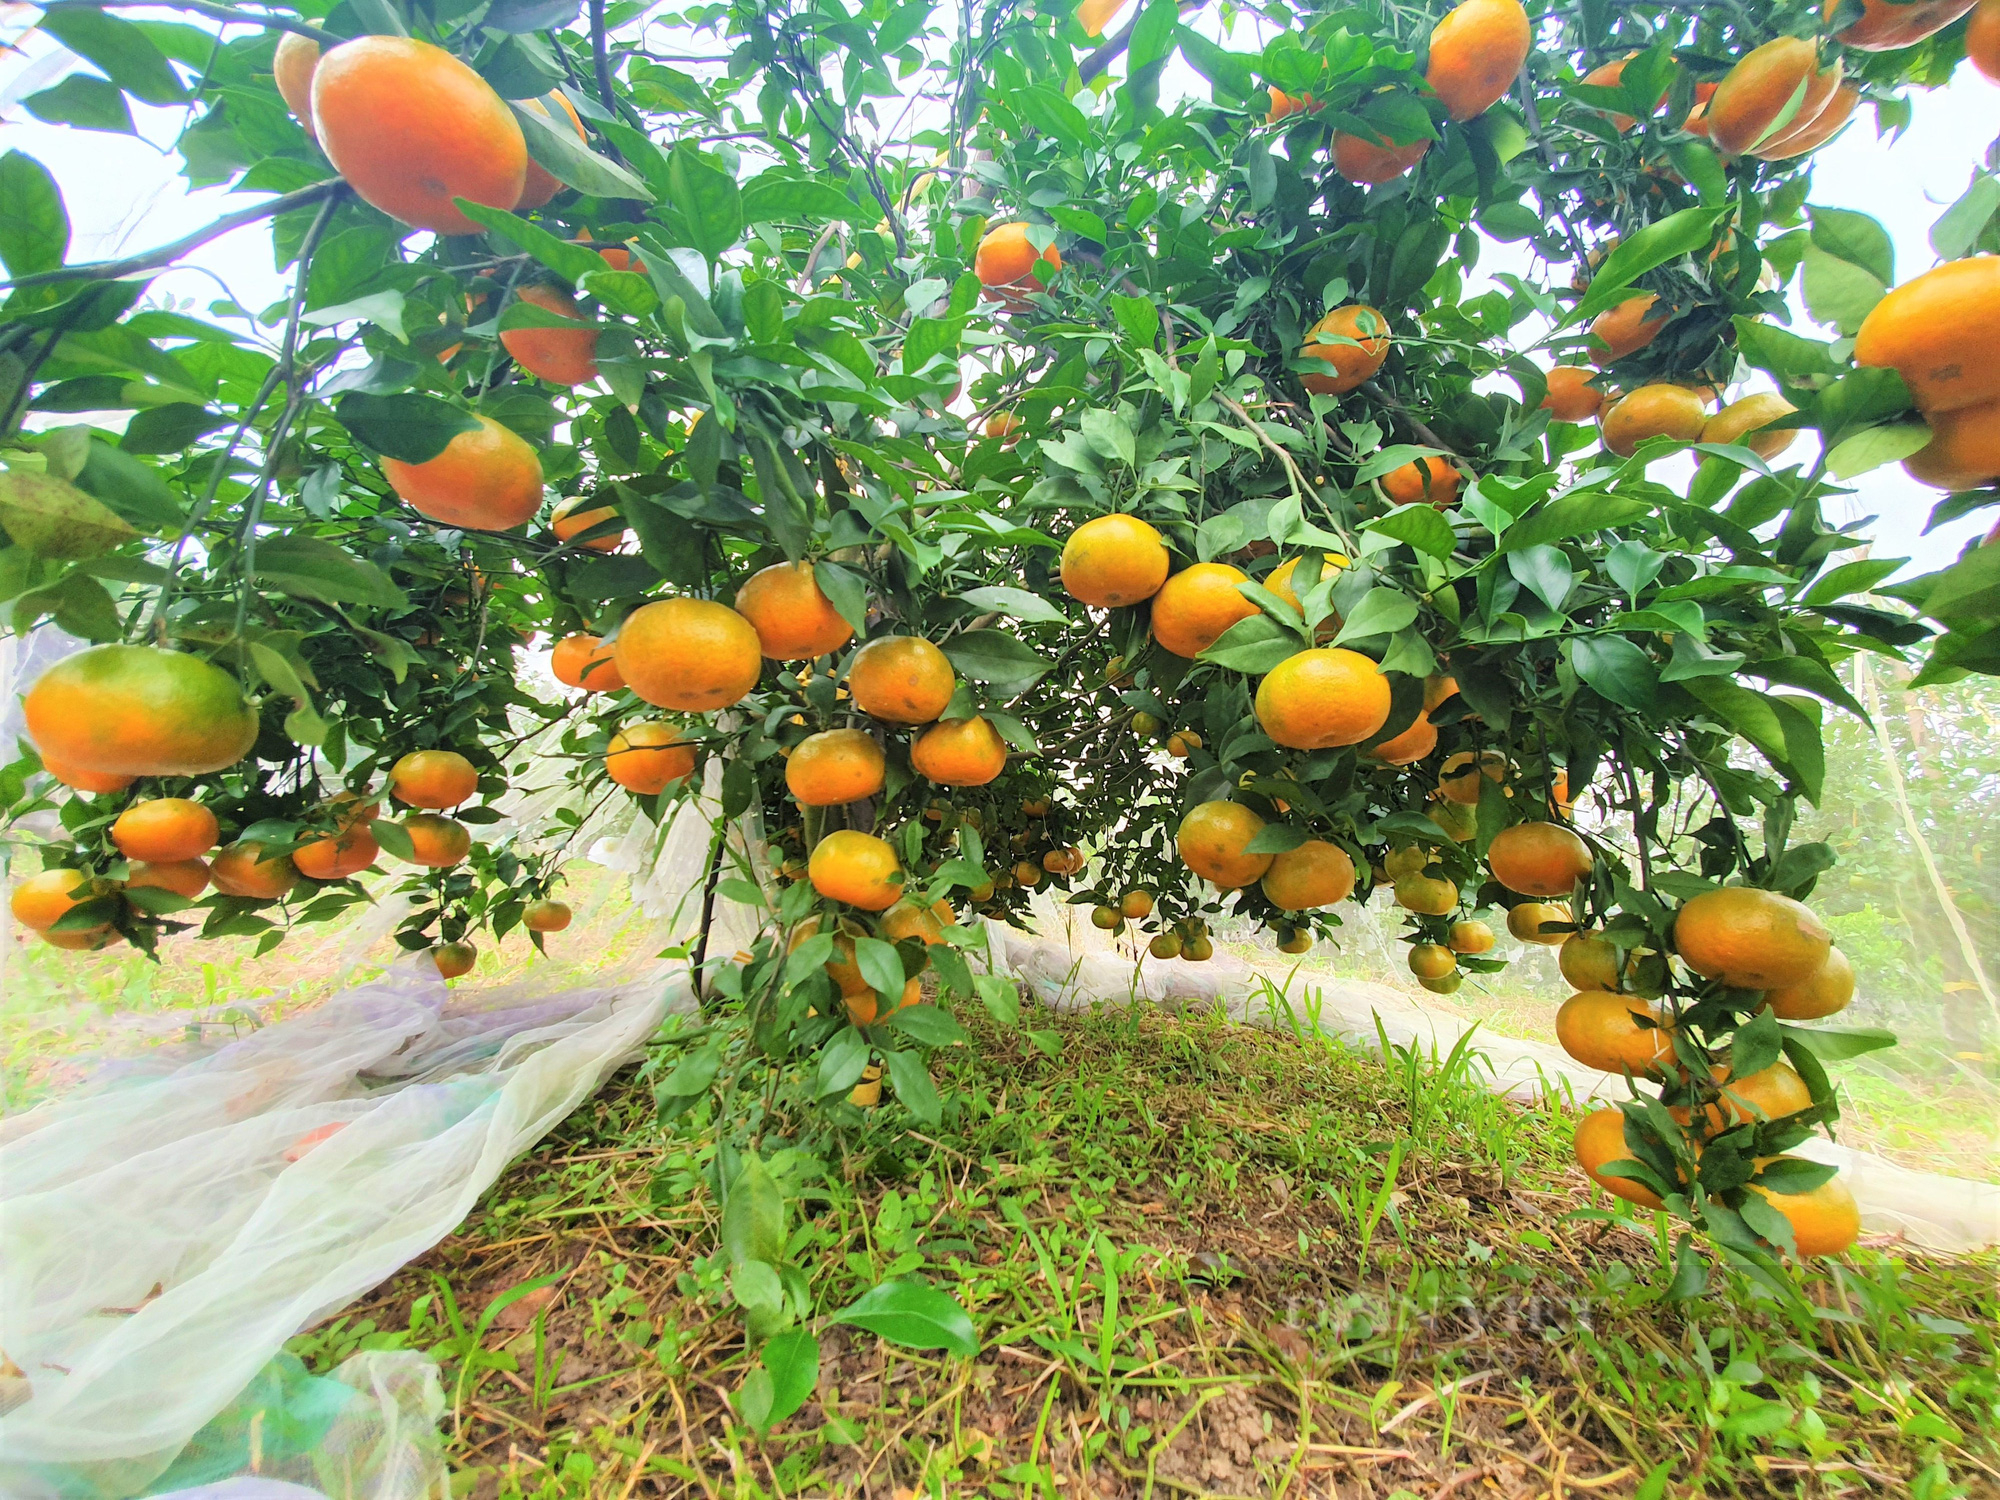 Nông dân Hà Tĩnh dùng độc chiêu “mắc màn” cho vườn cam, tránh sâu bọ tấn công - Ảnh 10.